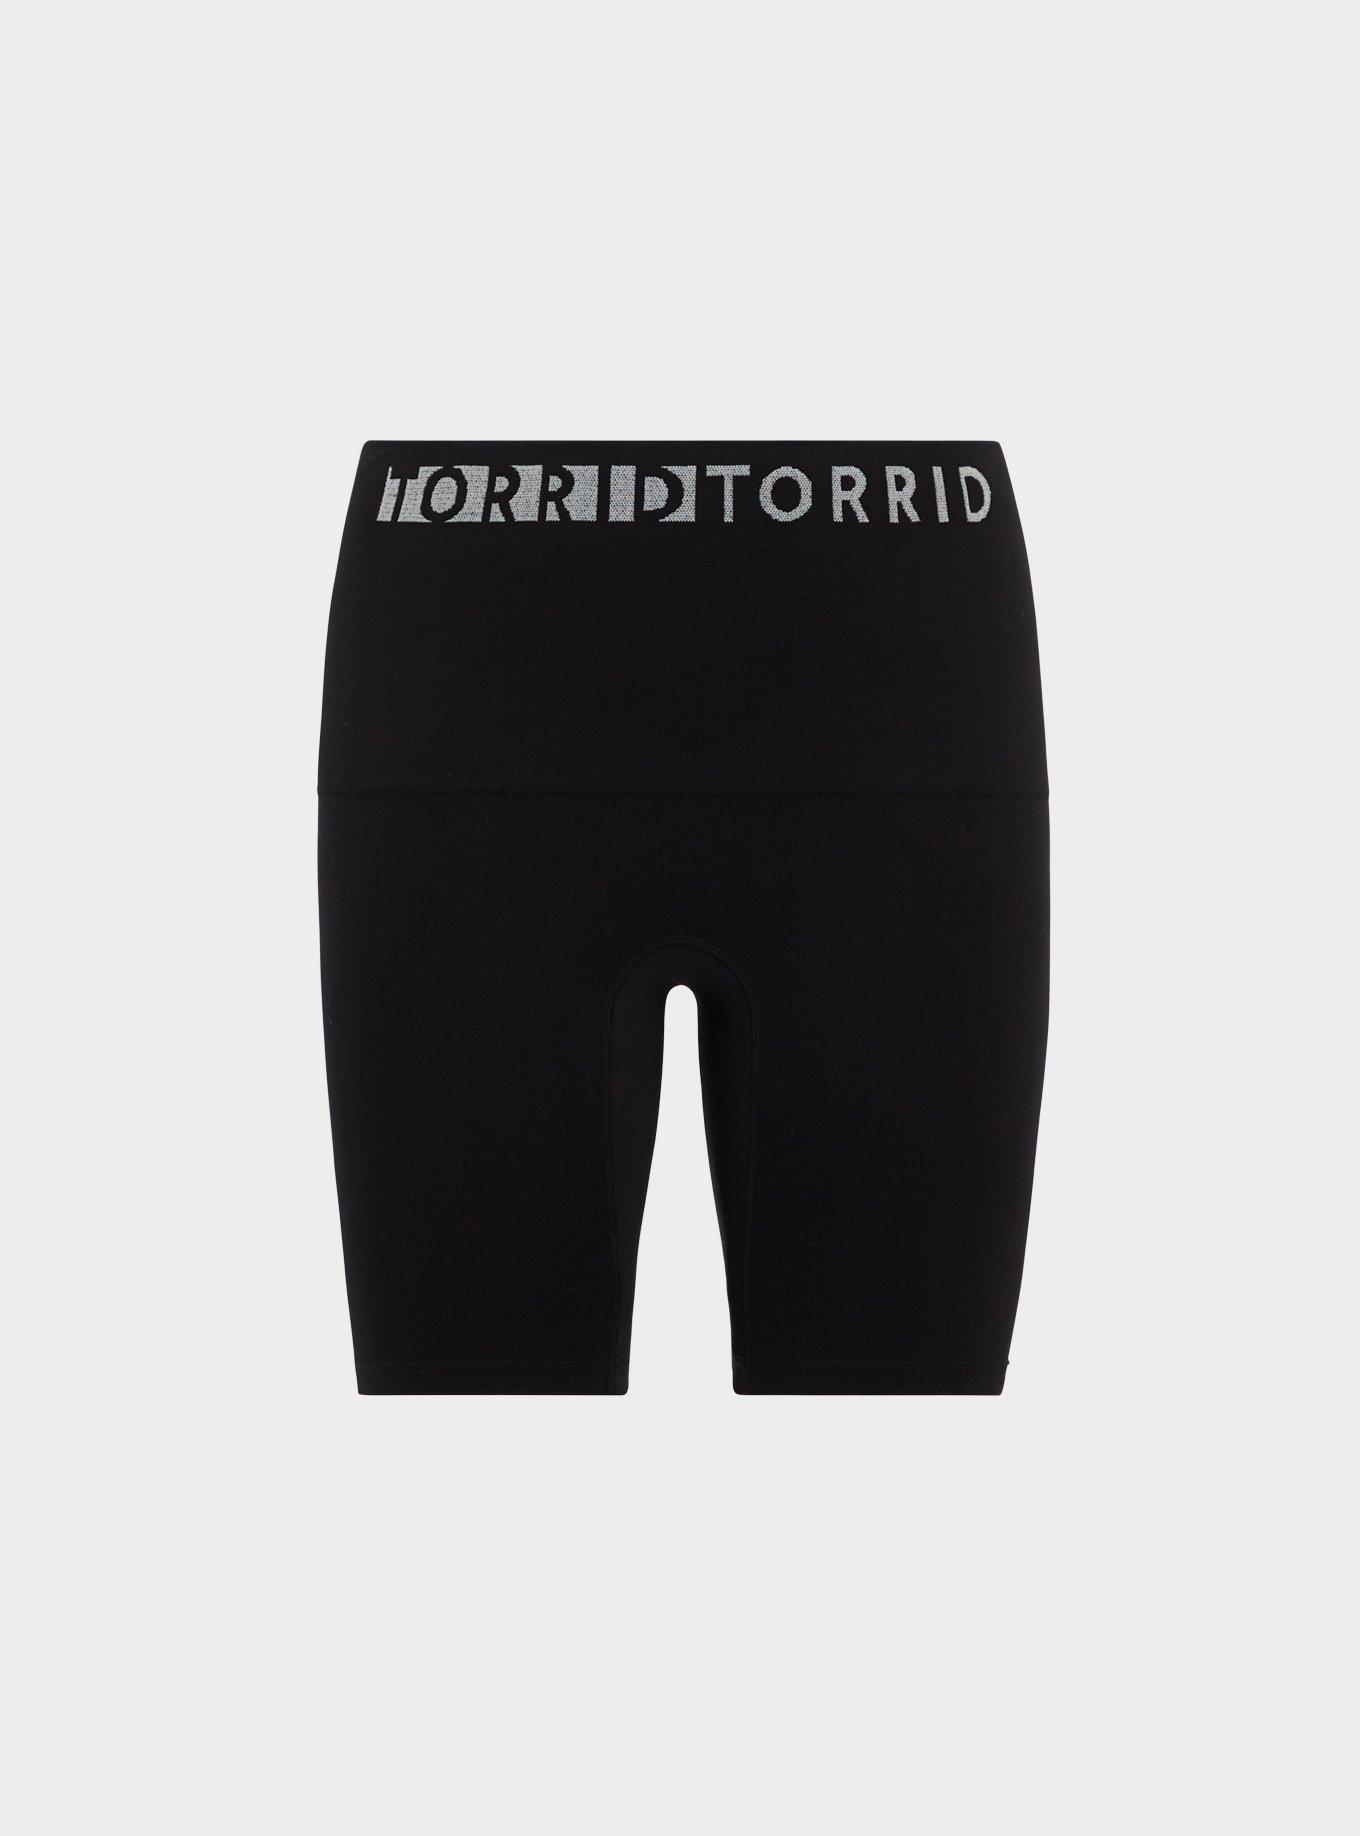 💐 Torrid Black Shorts